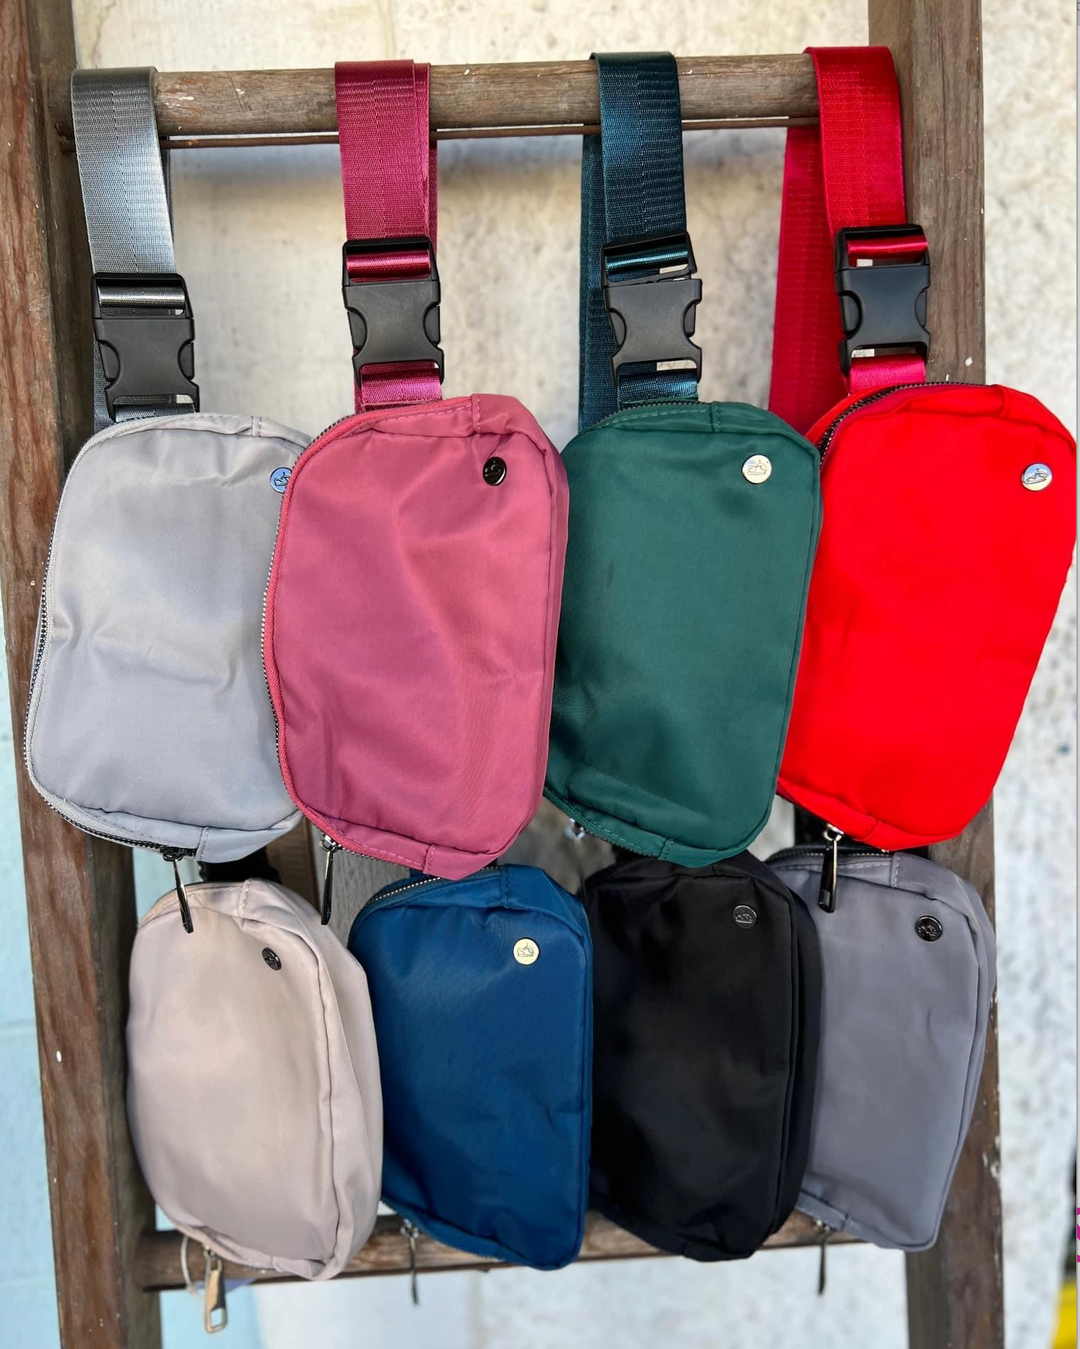 Belt Bags